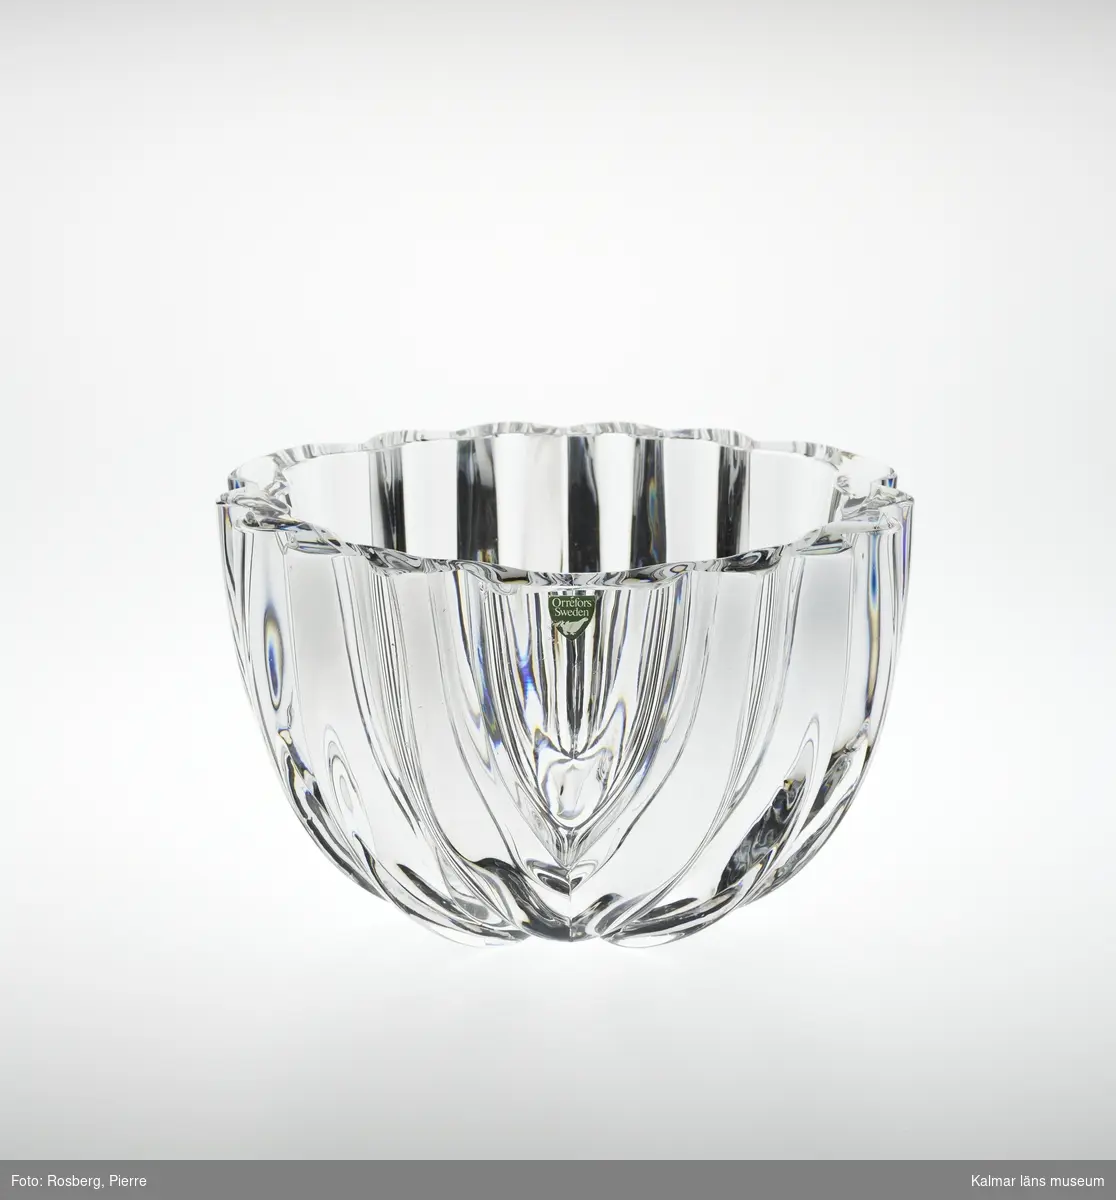 KLM 45619:193. Skål. Av ofärgat kristallglas. Rund form med veckad utsida, formad som ett stort blad. Upptill en klisterlapp: Orrefors Sweden.